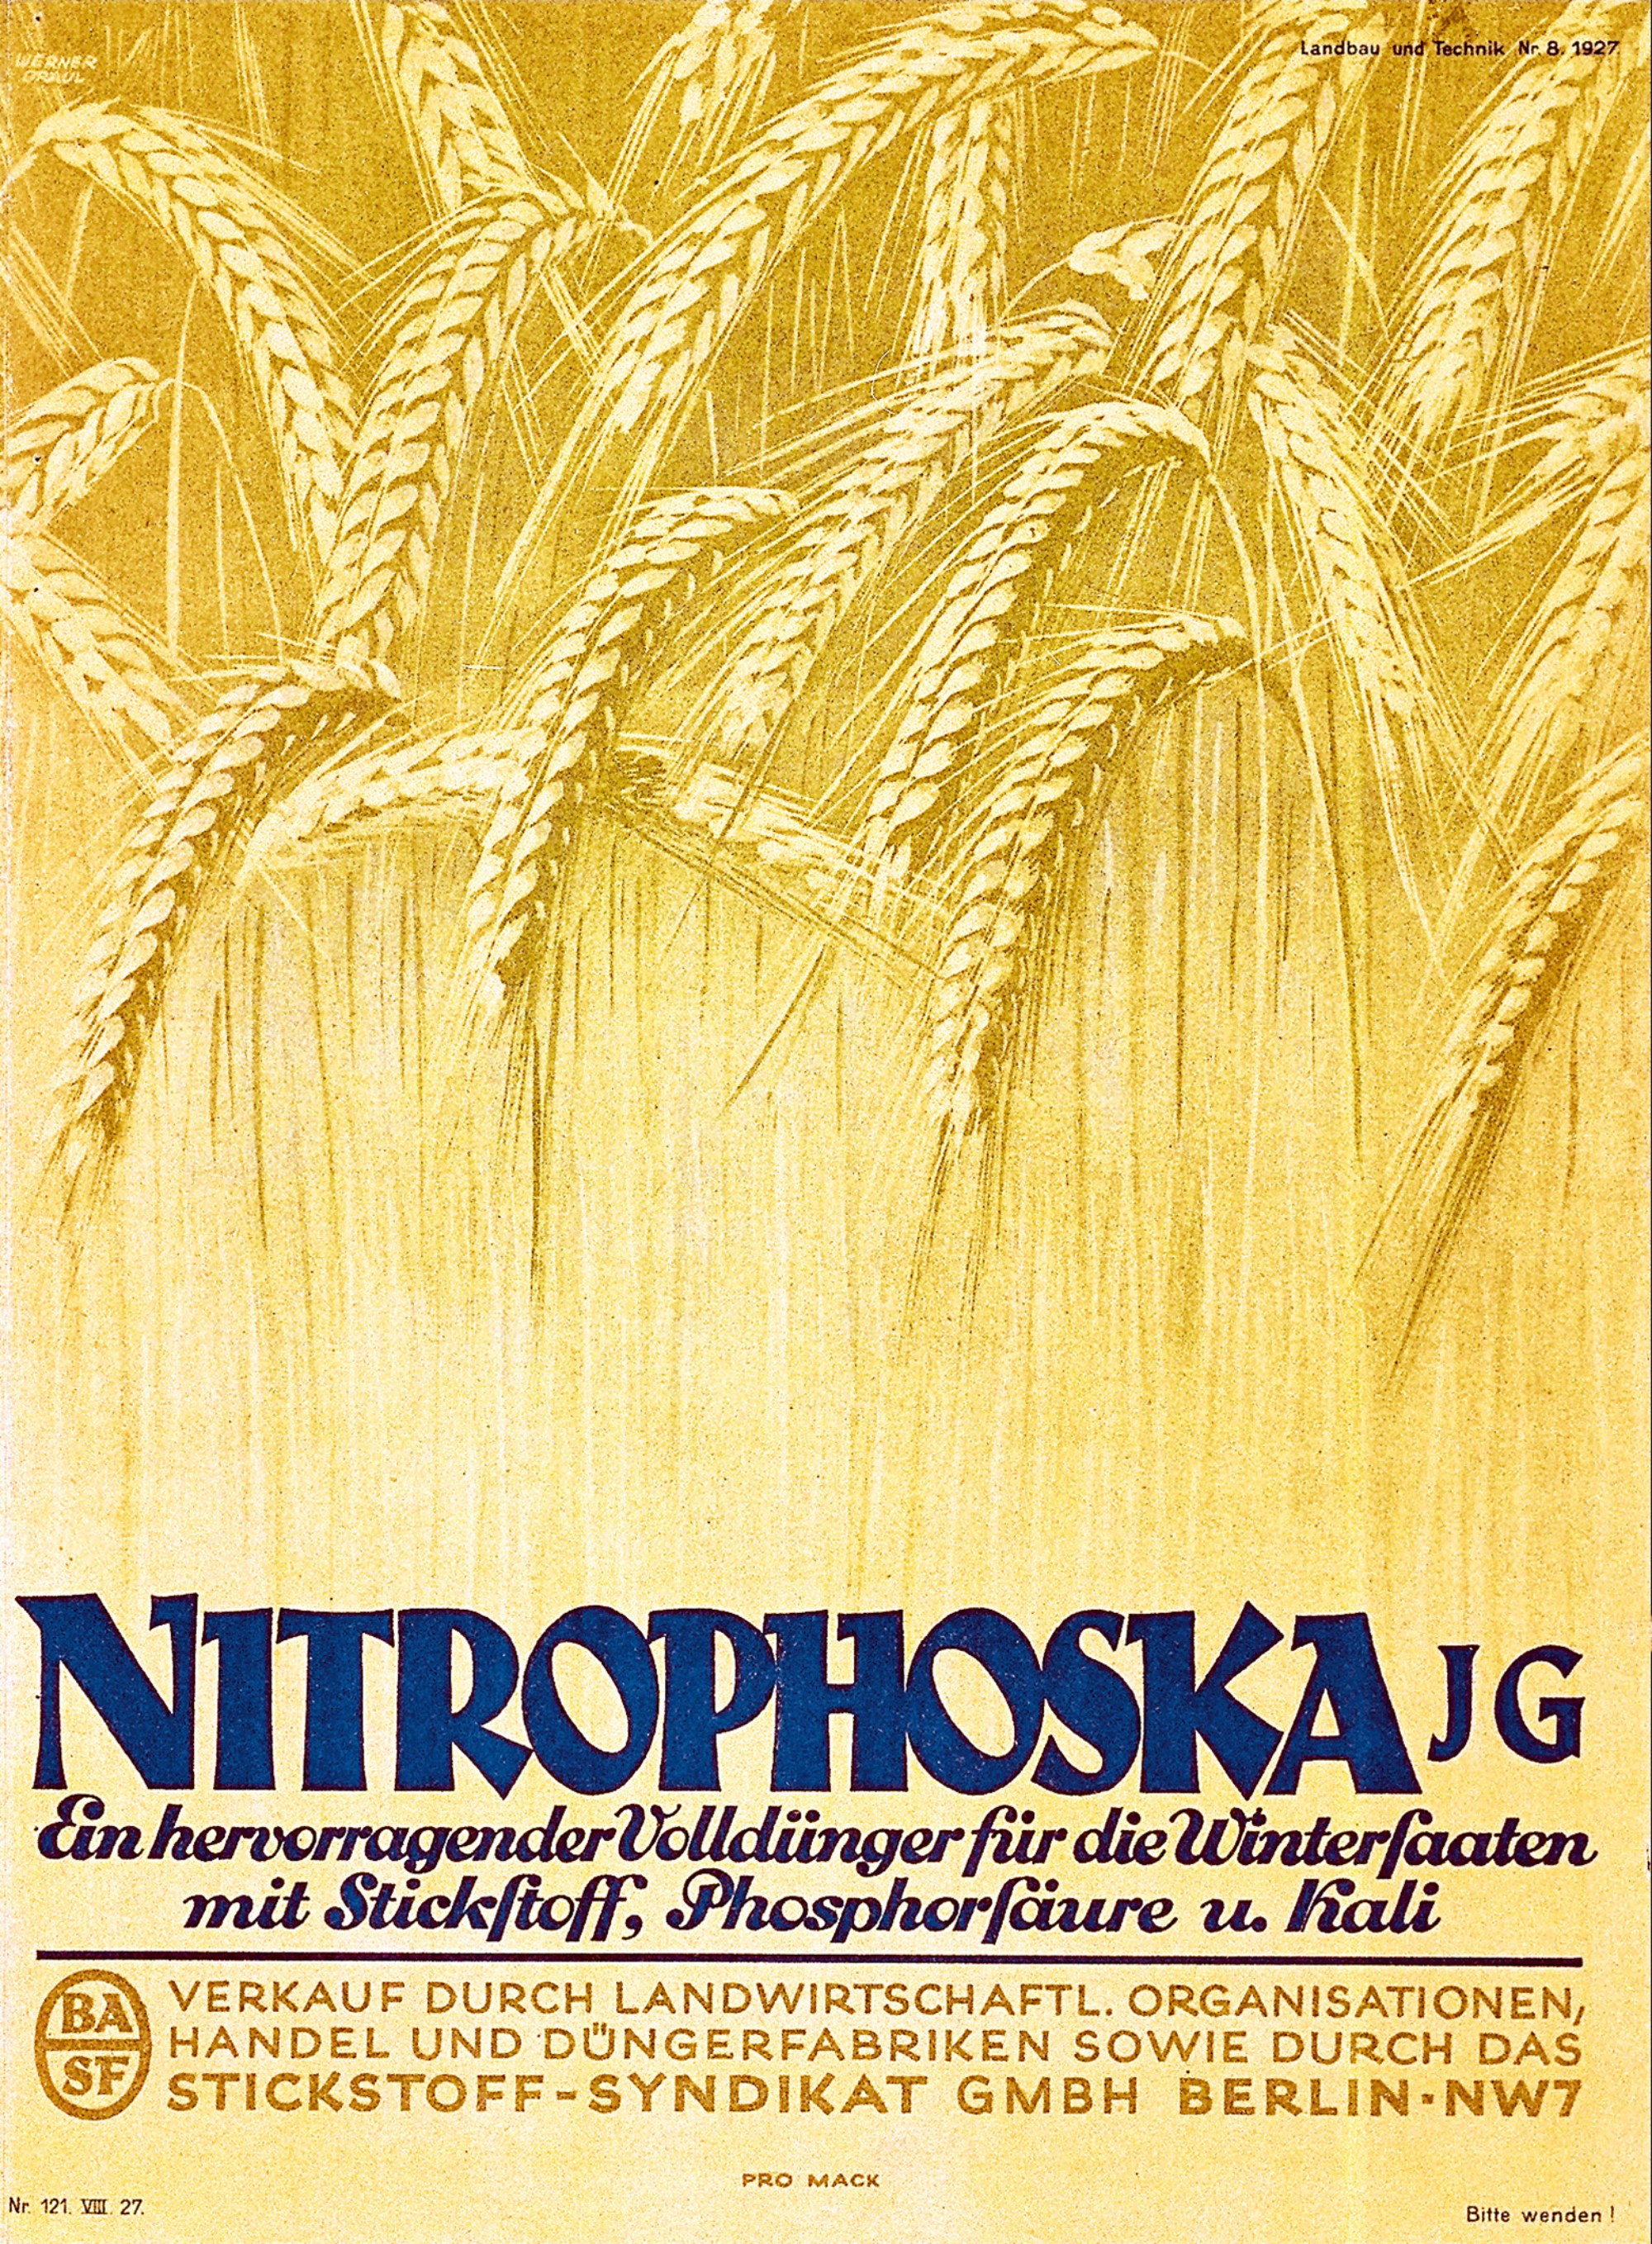 dobový a již barevný plakátek se žlutými svěšenými klasy obilí, s nápisem Nitrophoska a dalším textem v němčině